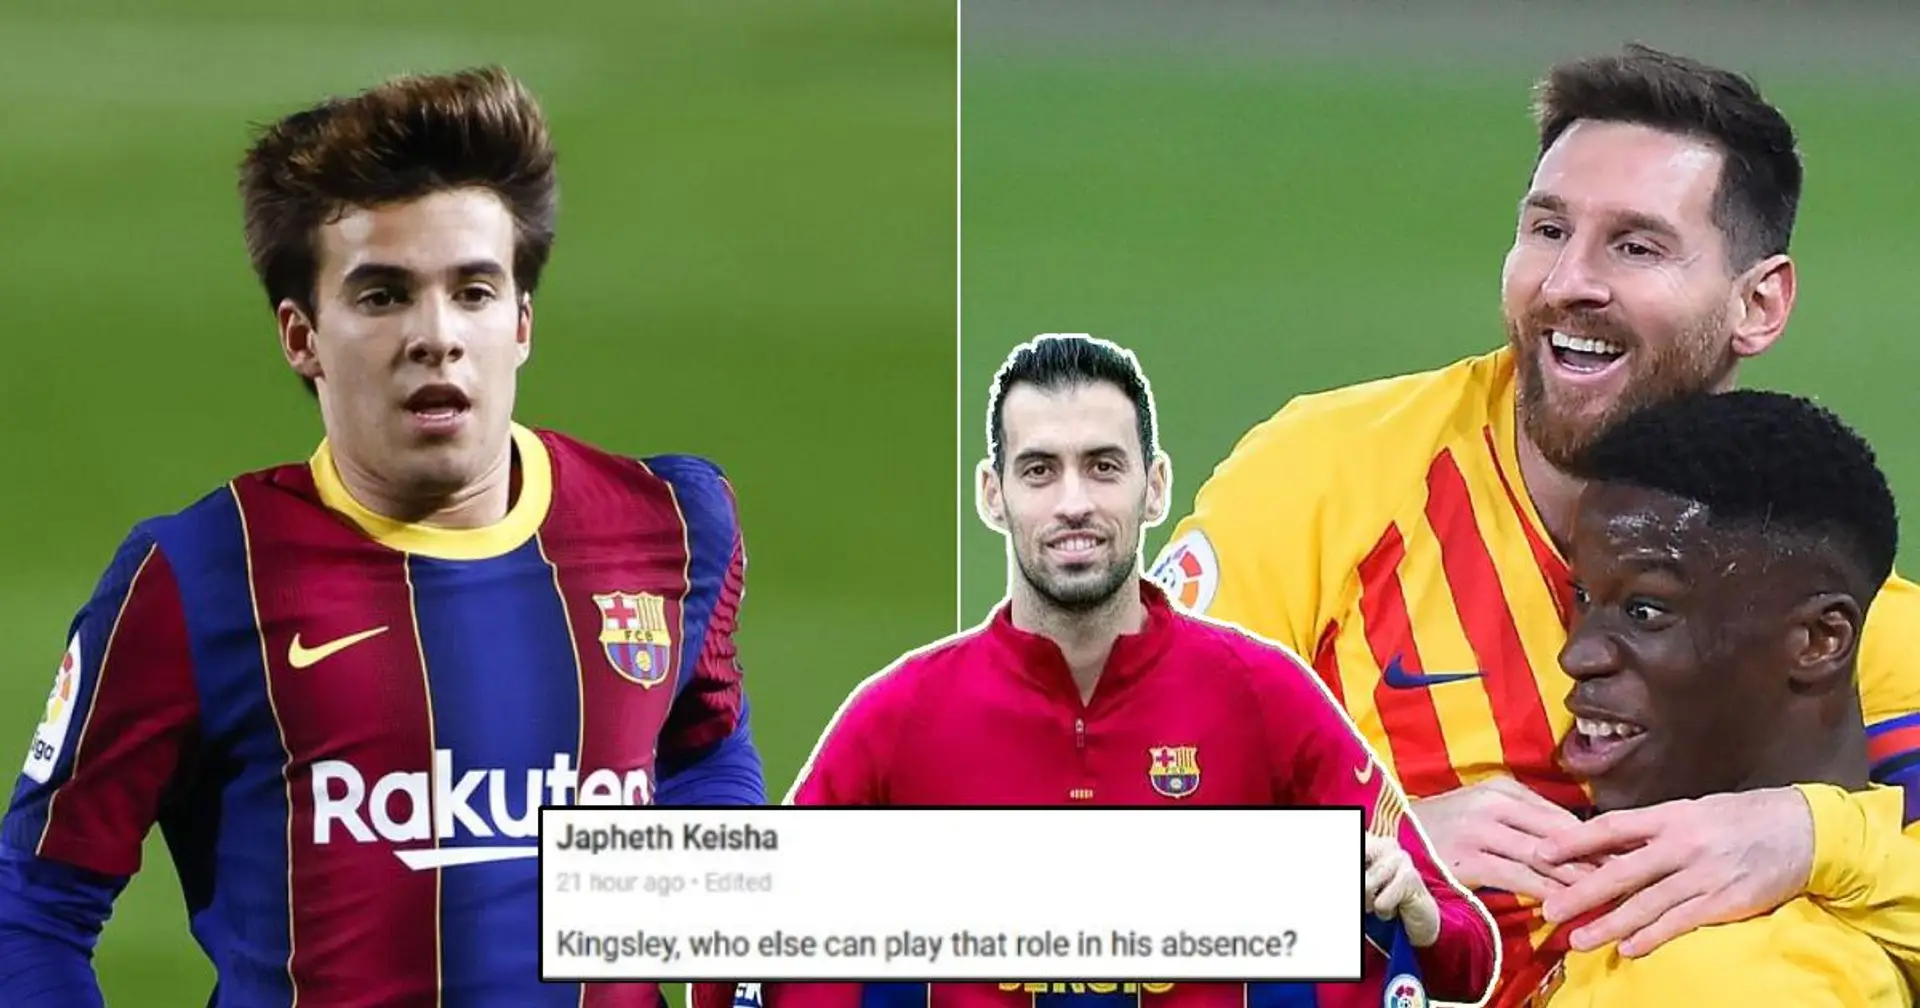 "Qui peut remplacer Sergio Busquets au Barça?": Vous avez demandé, nous vous répondons